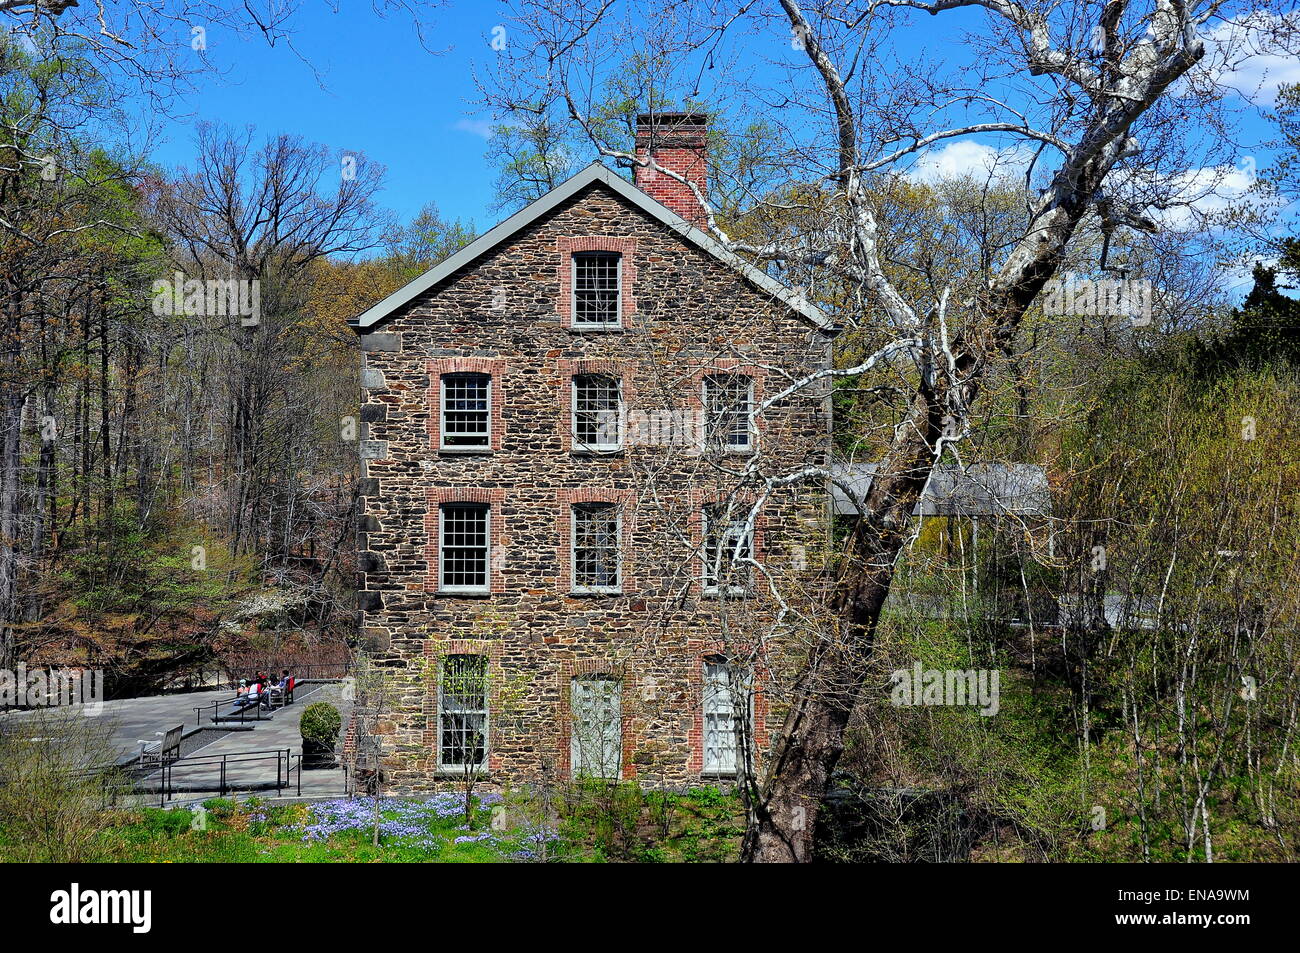 Bronx, New York: 1840 vecchio mulino in pietra sul fiume Bronx a New York al Giardino Botanico * Foto Stock